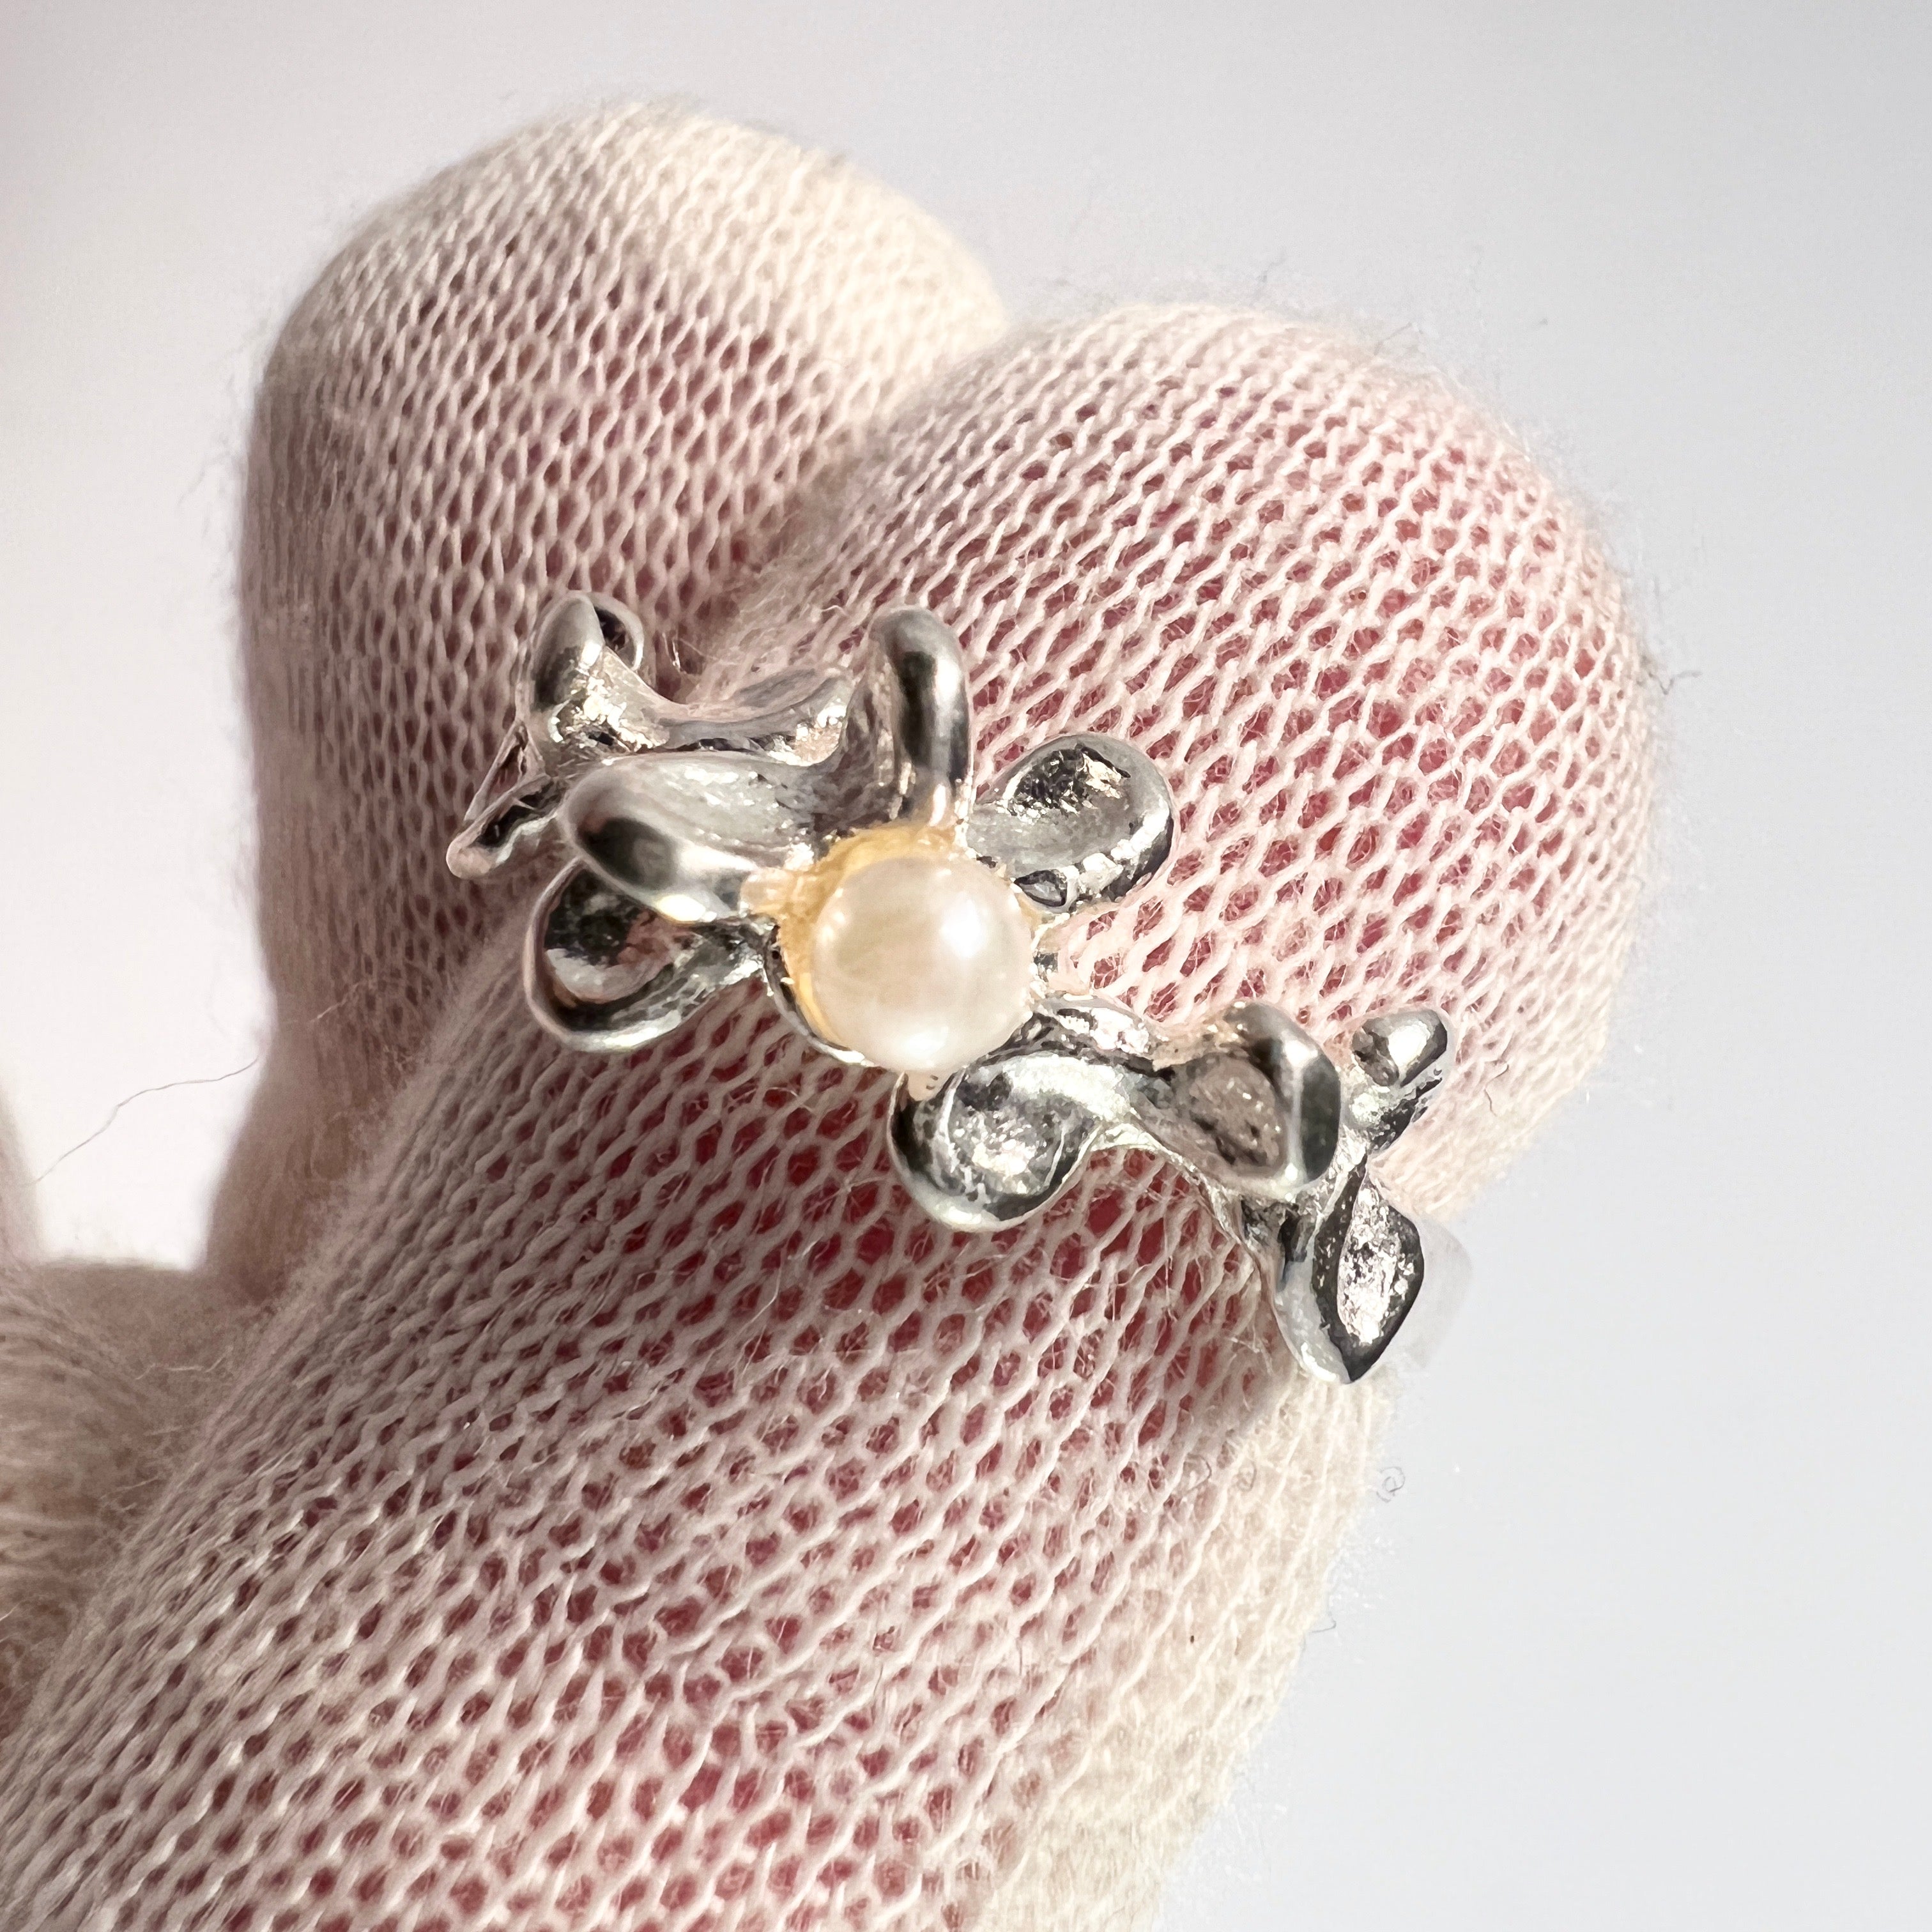 Kultasepat Salovaara, Finland. Vintage Sterling Silver Cultured Pearl Ring.